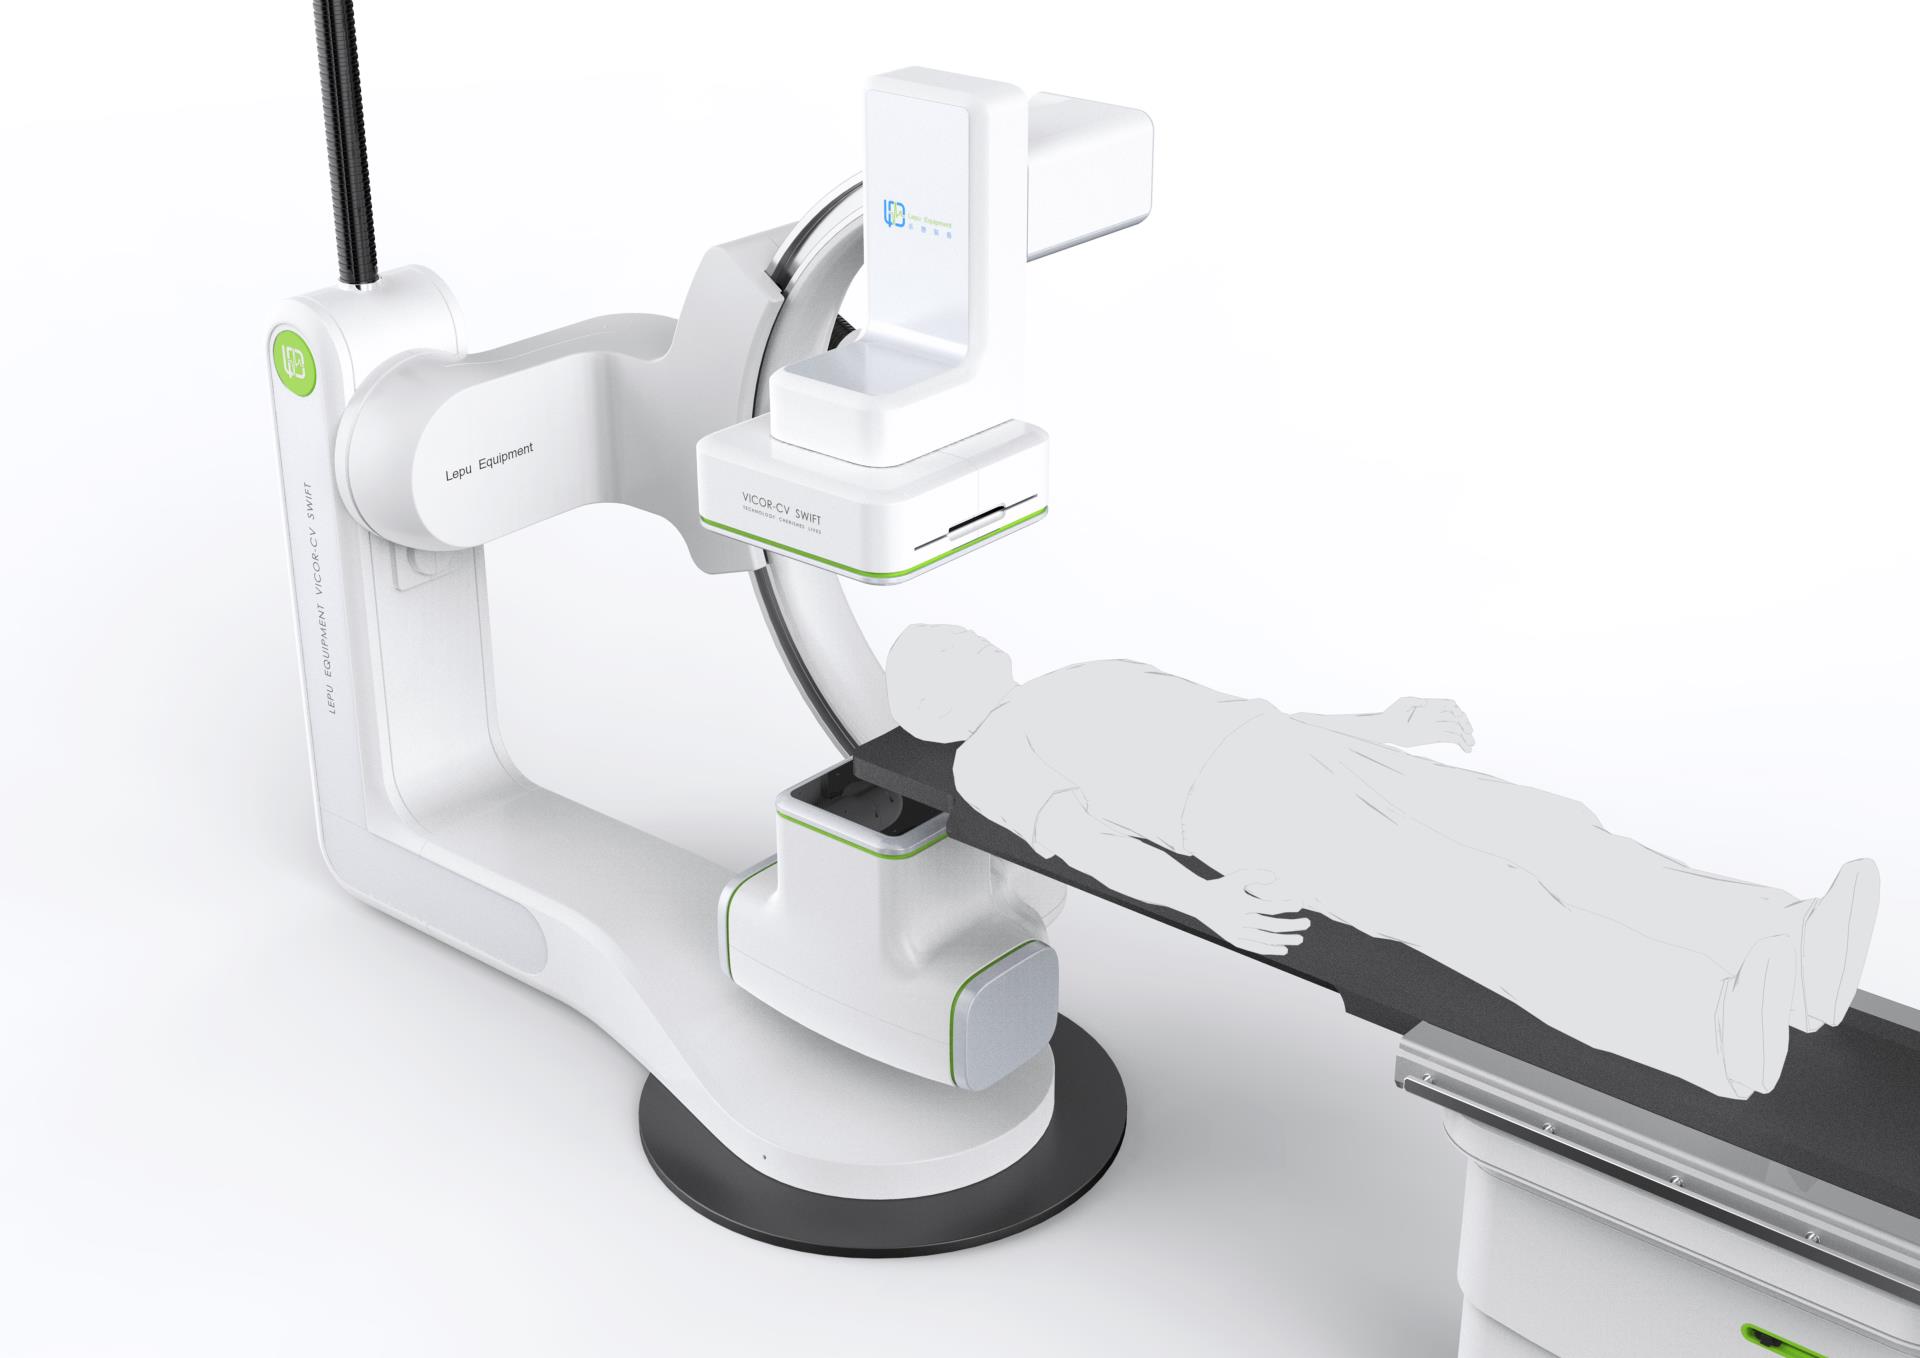 07 - 大尺寸产品图片《乐普医用血管造影X射线机》LEPU AngiographicX-raySystem.jpg